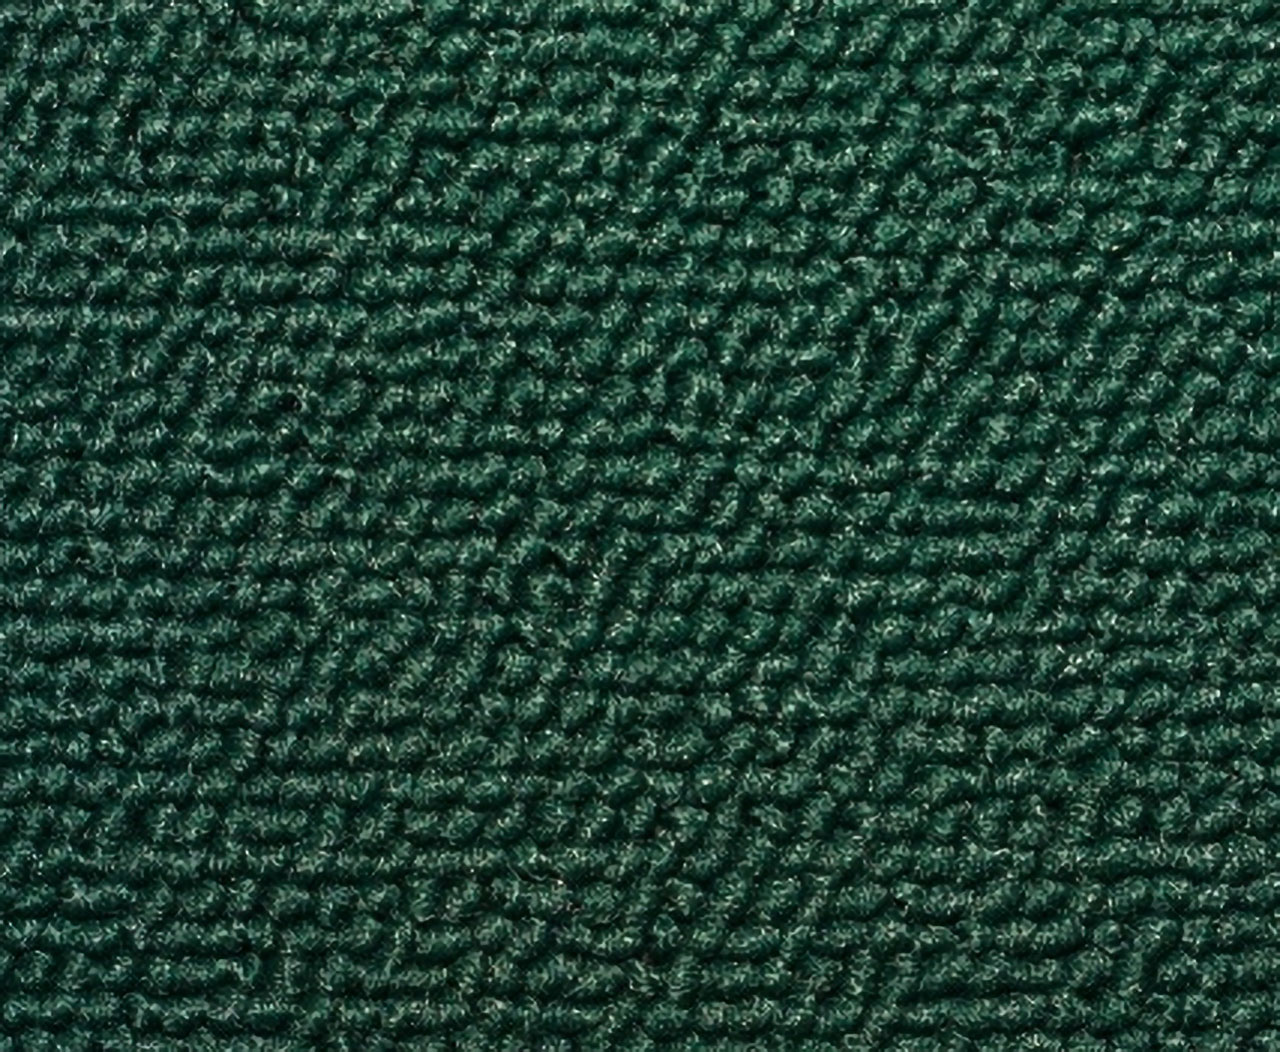 Holden Premier HT Premier Sedan 16R Isis Green Carpet (Image 1 of 1)